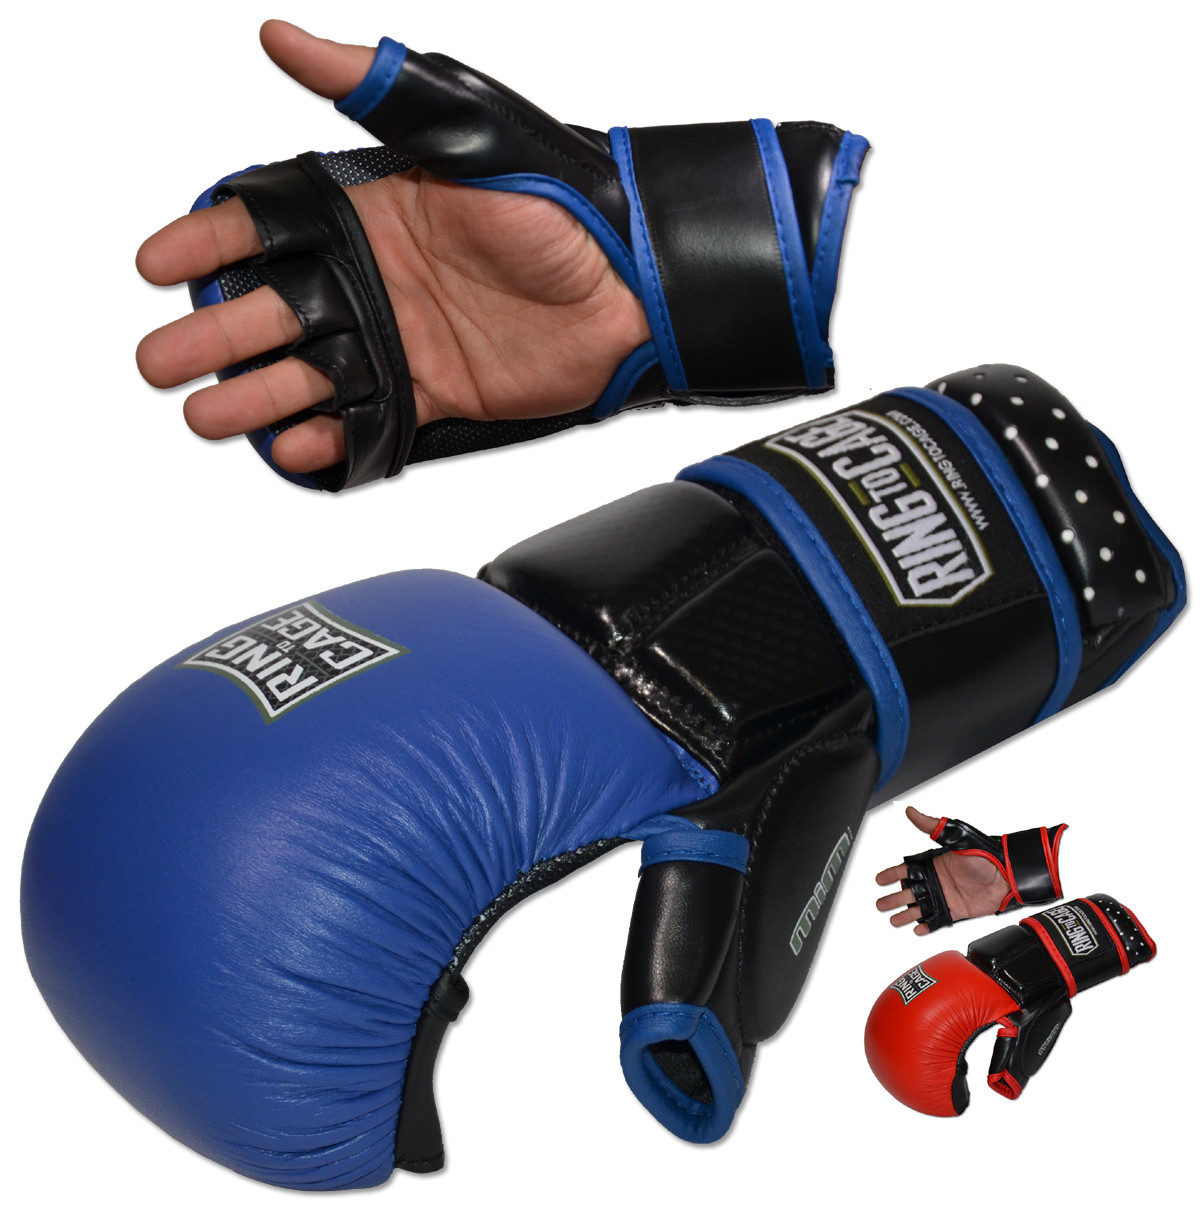 ultima iii gloves